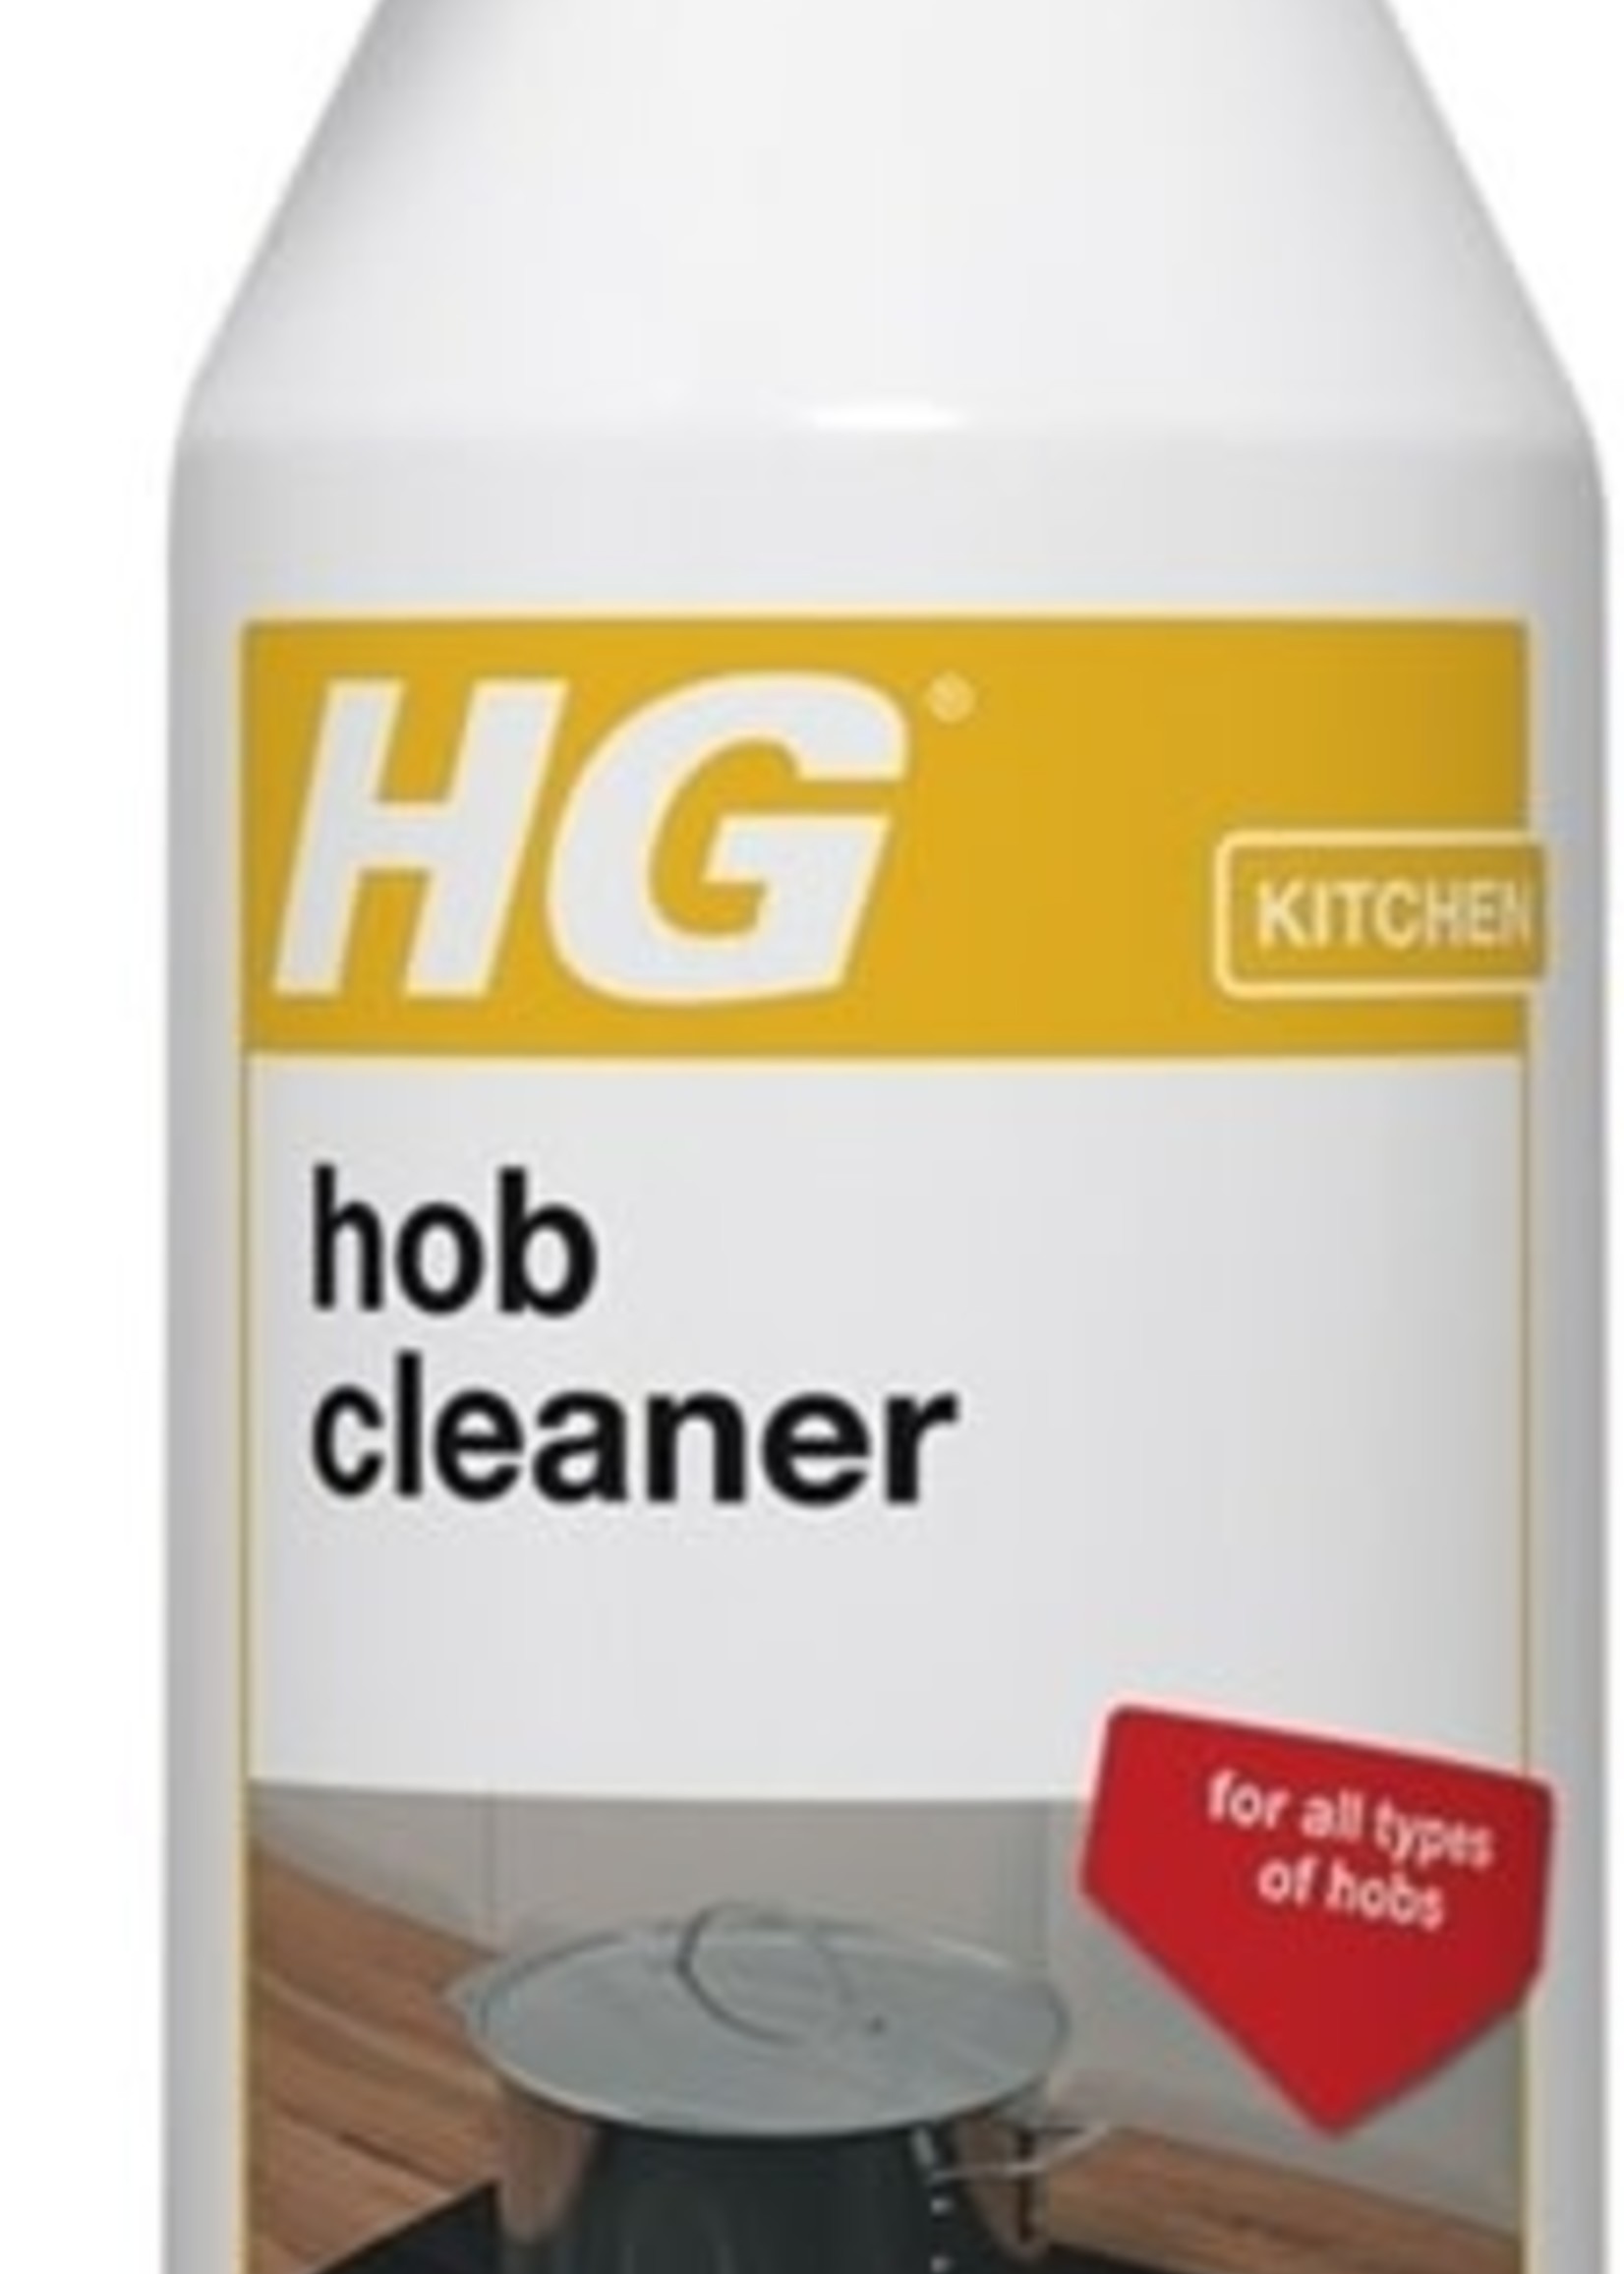 HG (Hagesan (UK) Ltd) HG Hob Cleaner 500ml Spray